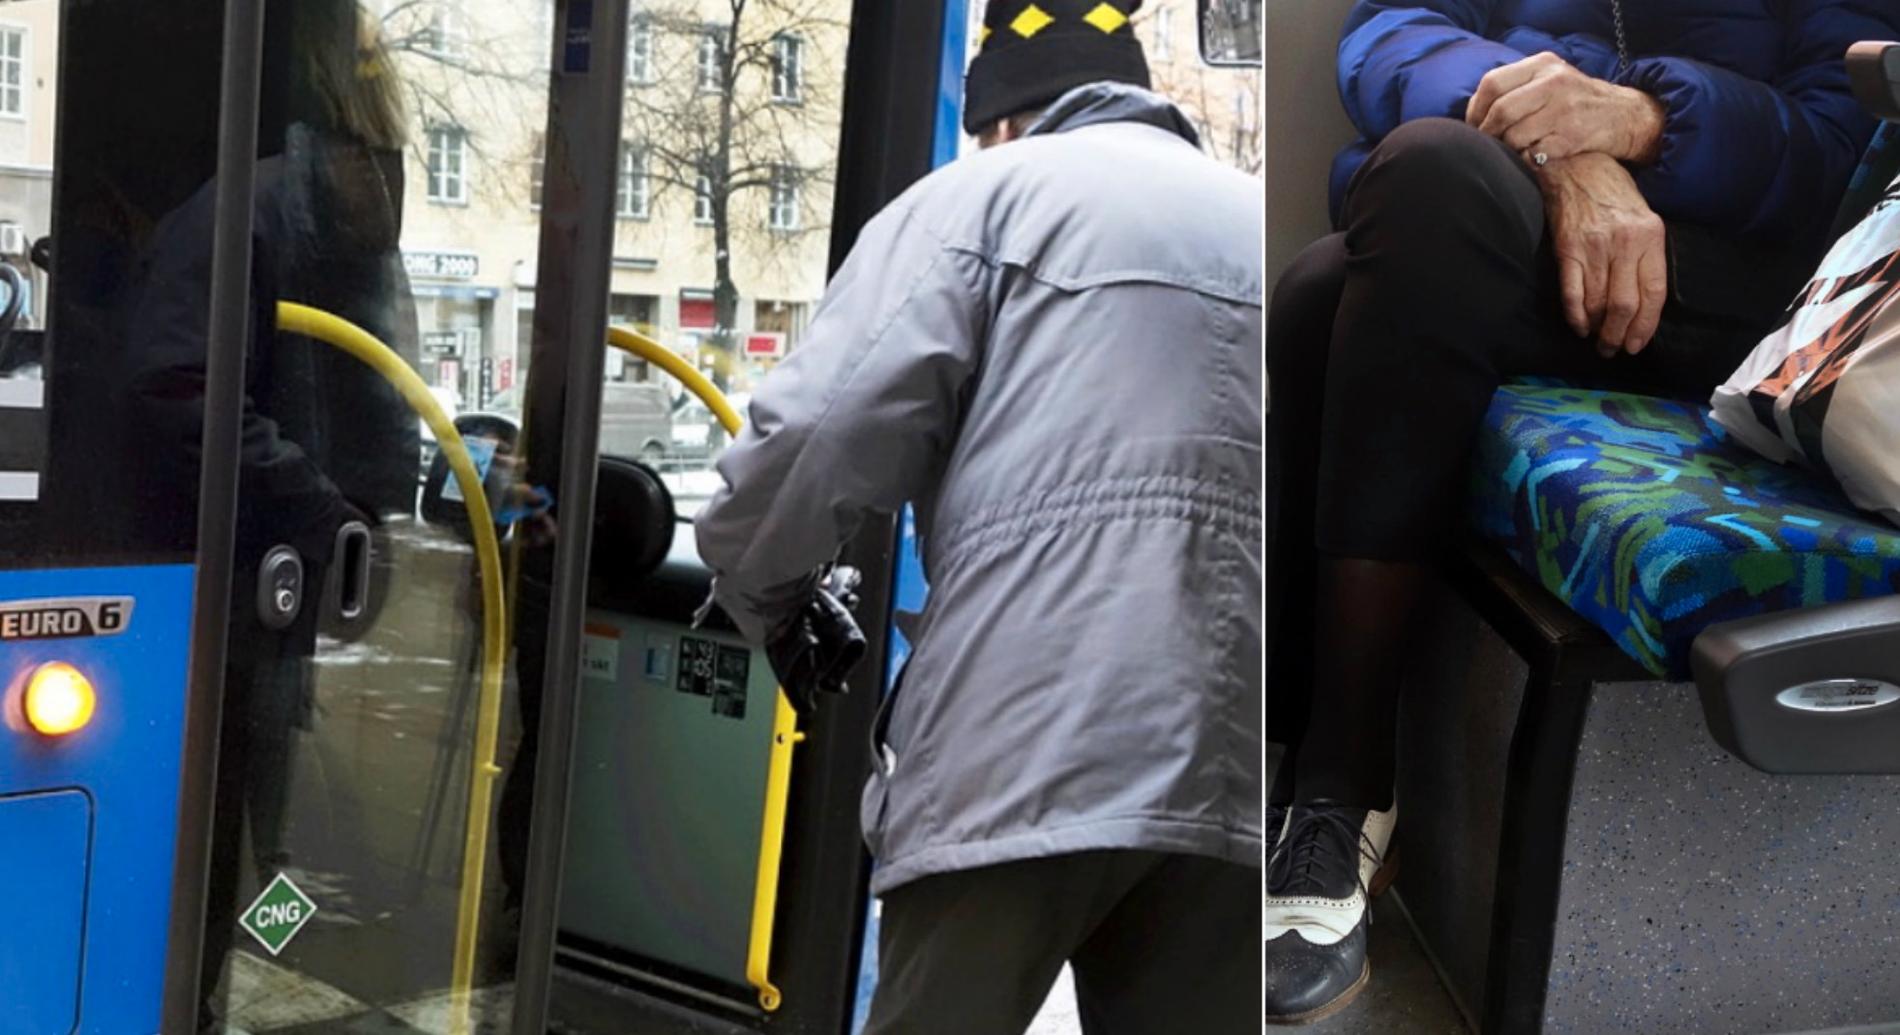 Personerna på bilderna är äldre människor utanför och ombord på en buss, dock inte i skånska Hörby.